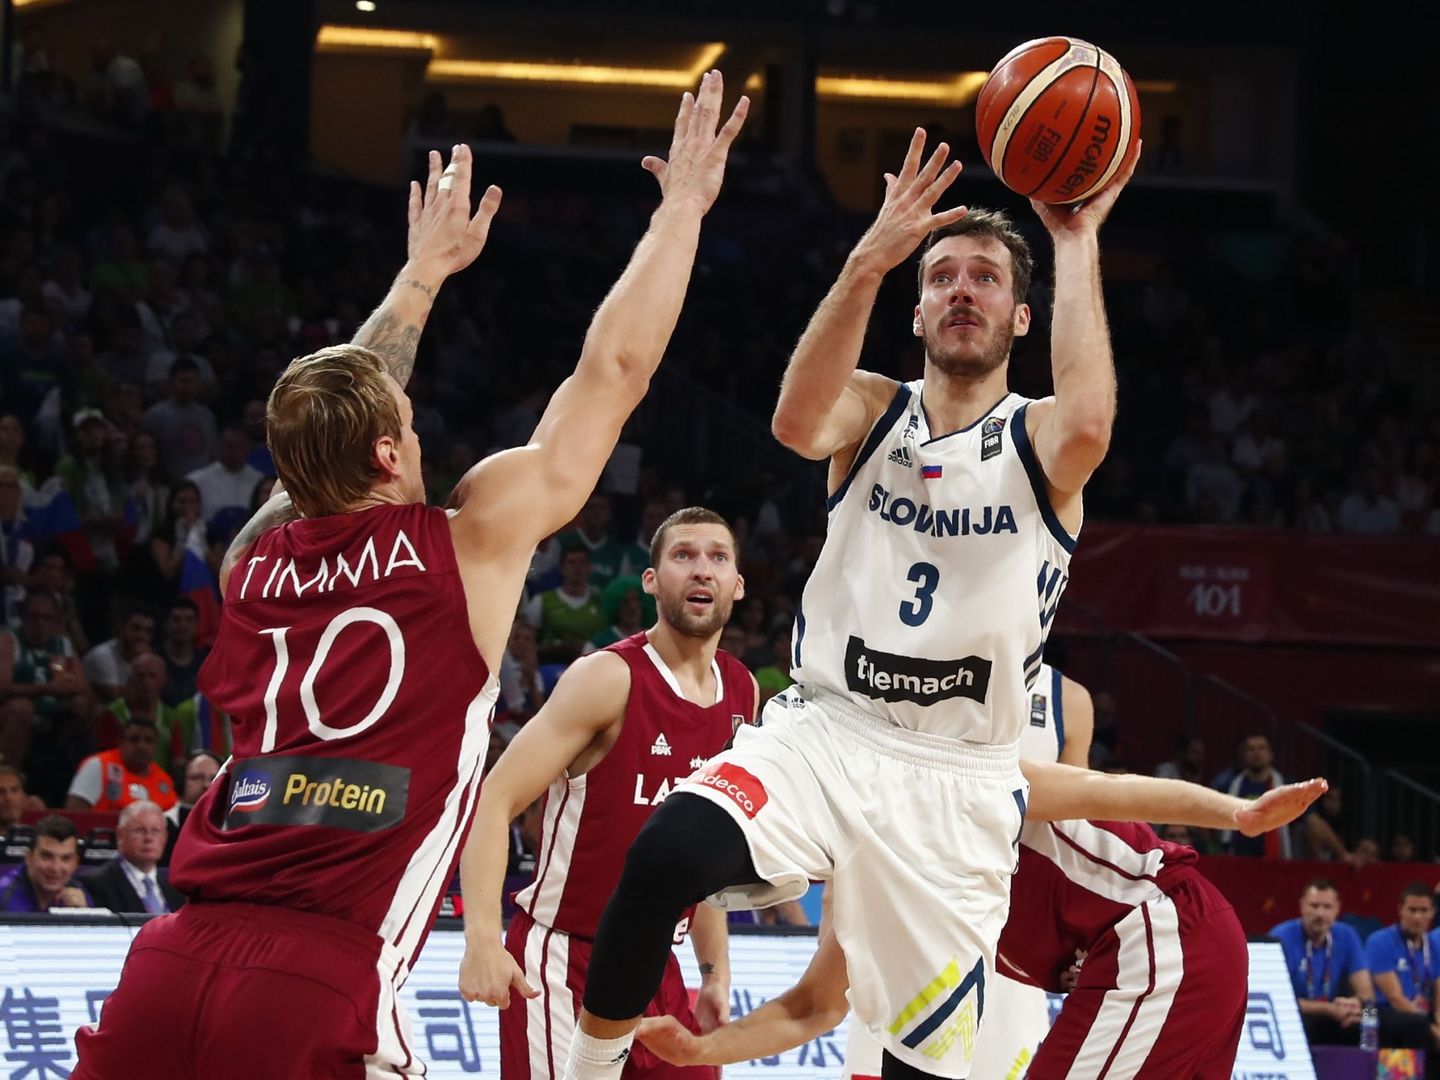 Goran Dragic promedia 21,9 puntos por partido en el EuroBasket. (Reuters)